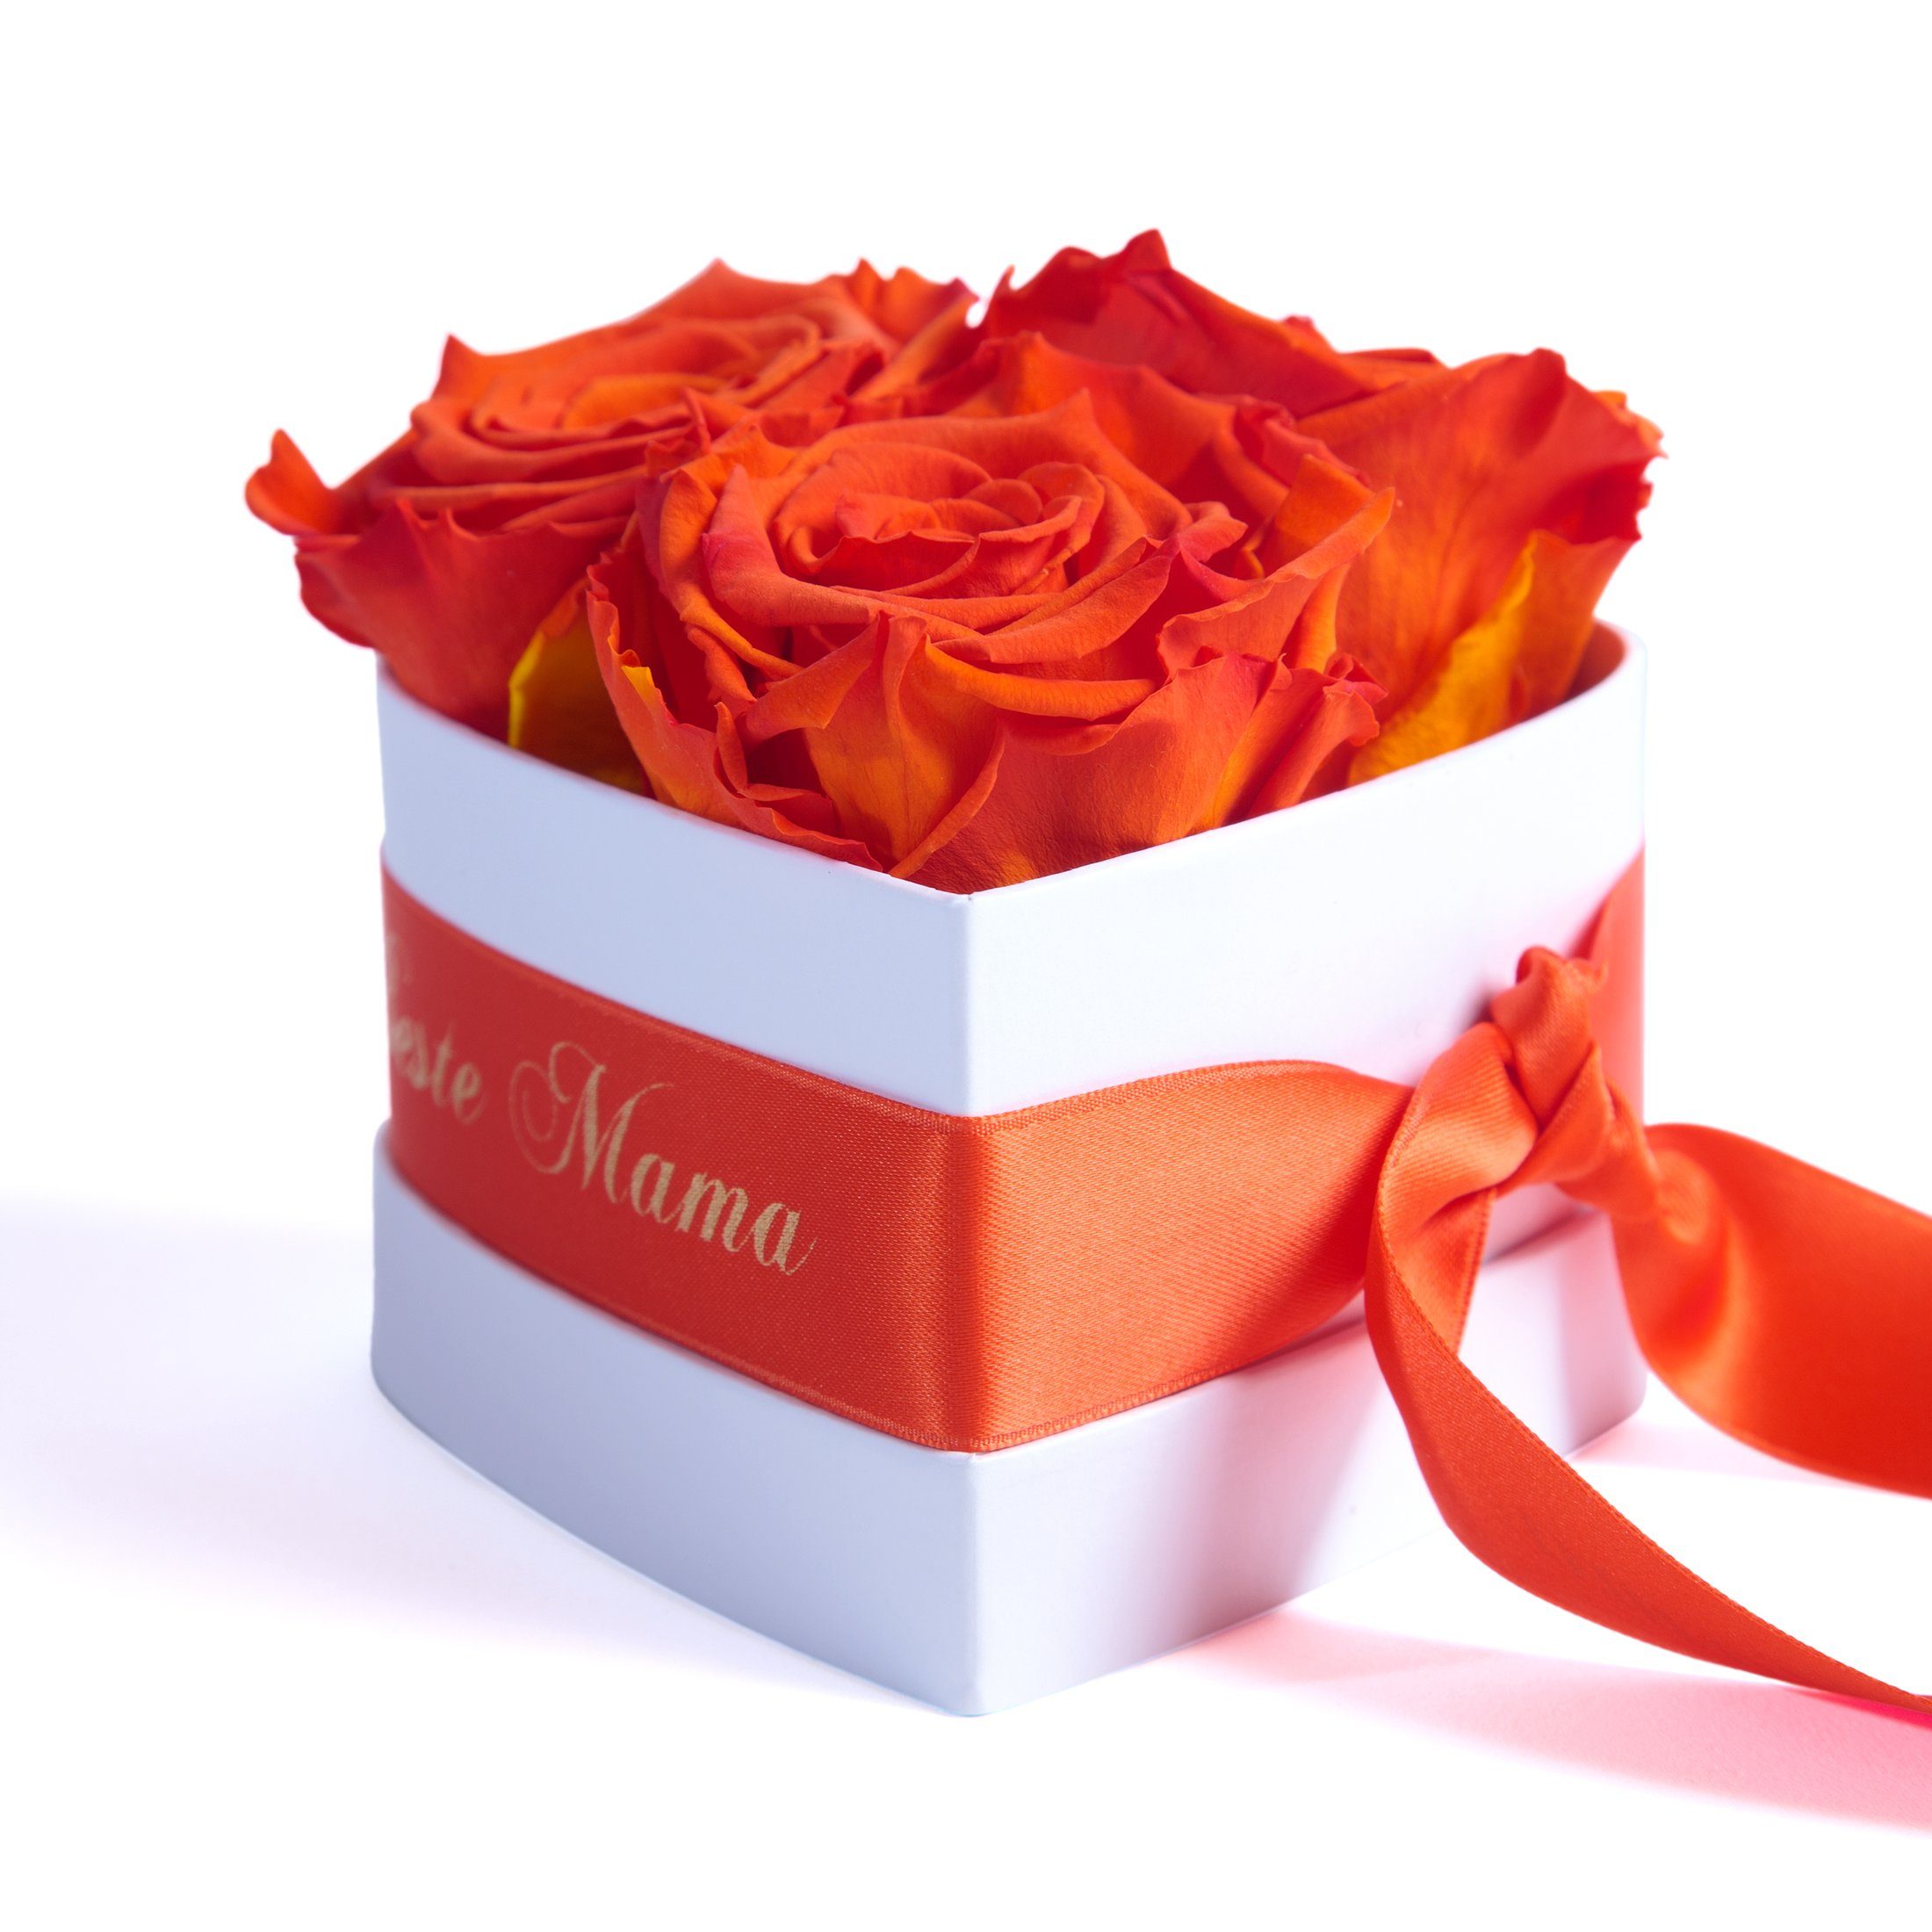 Welt Herz Höhe die Rose, Orange 3 3 cm, haltbar Kunstblume Heidelberg, der für Mama Rosen ROSEMARIE SCHULZ Infinity Jahre echte Geschenk Beste 10 Blumen Rosenbox